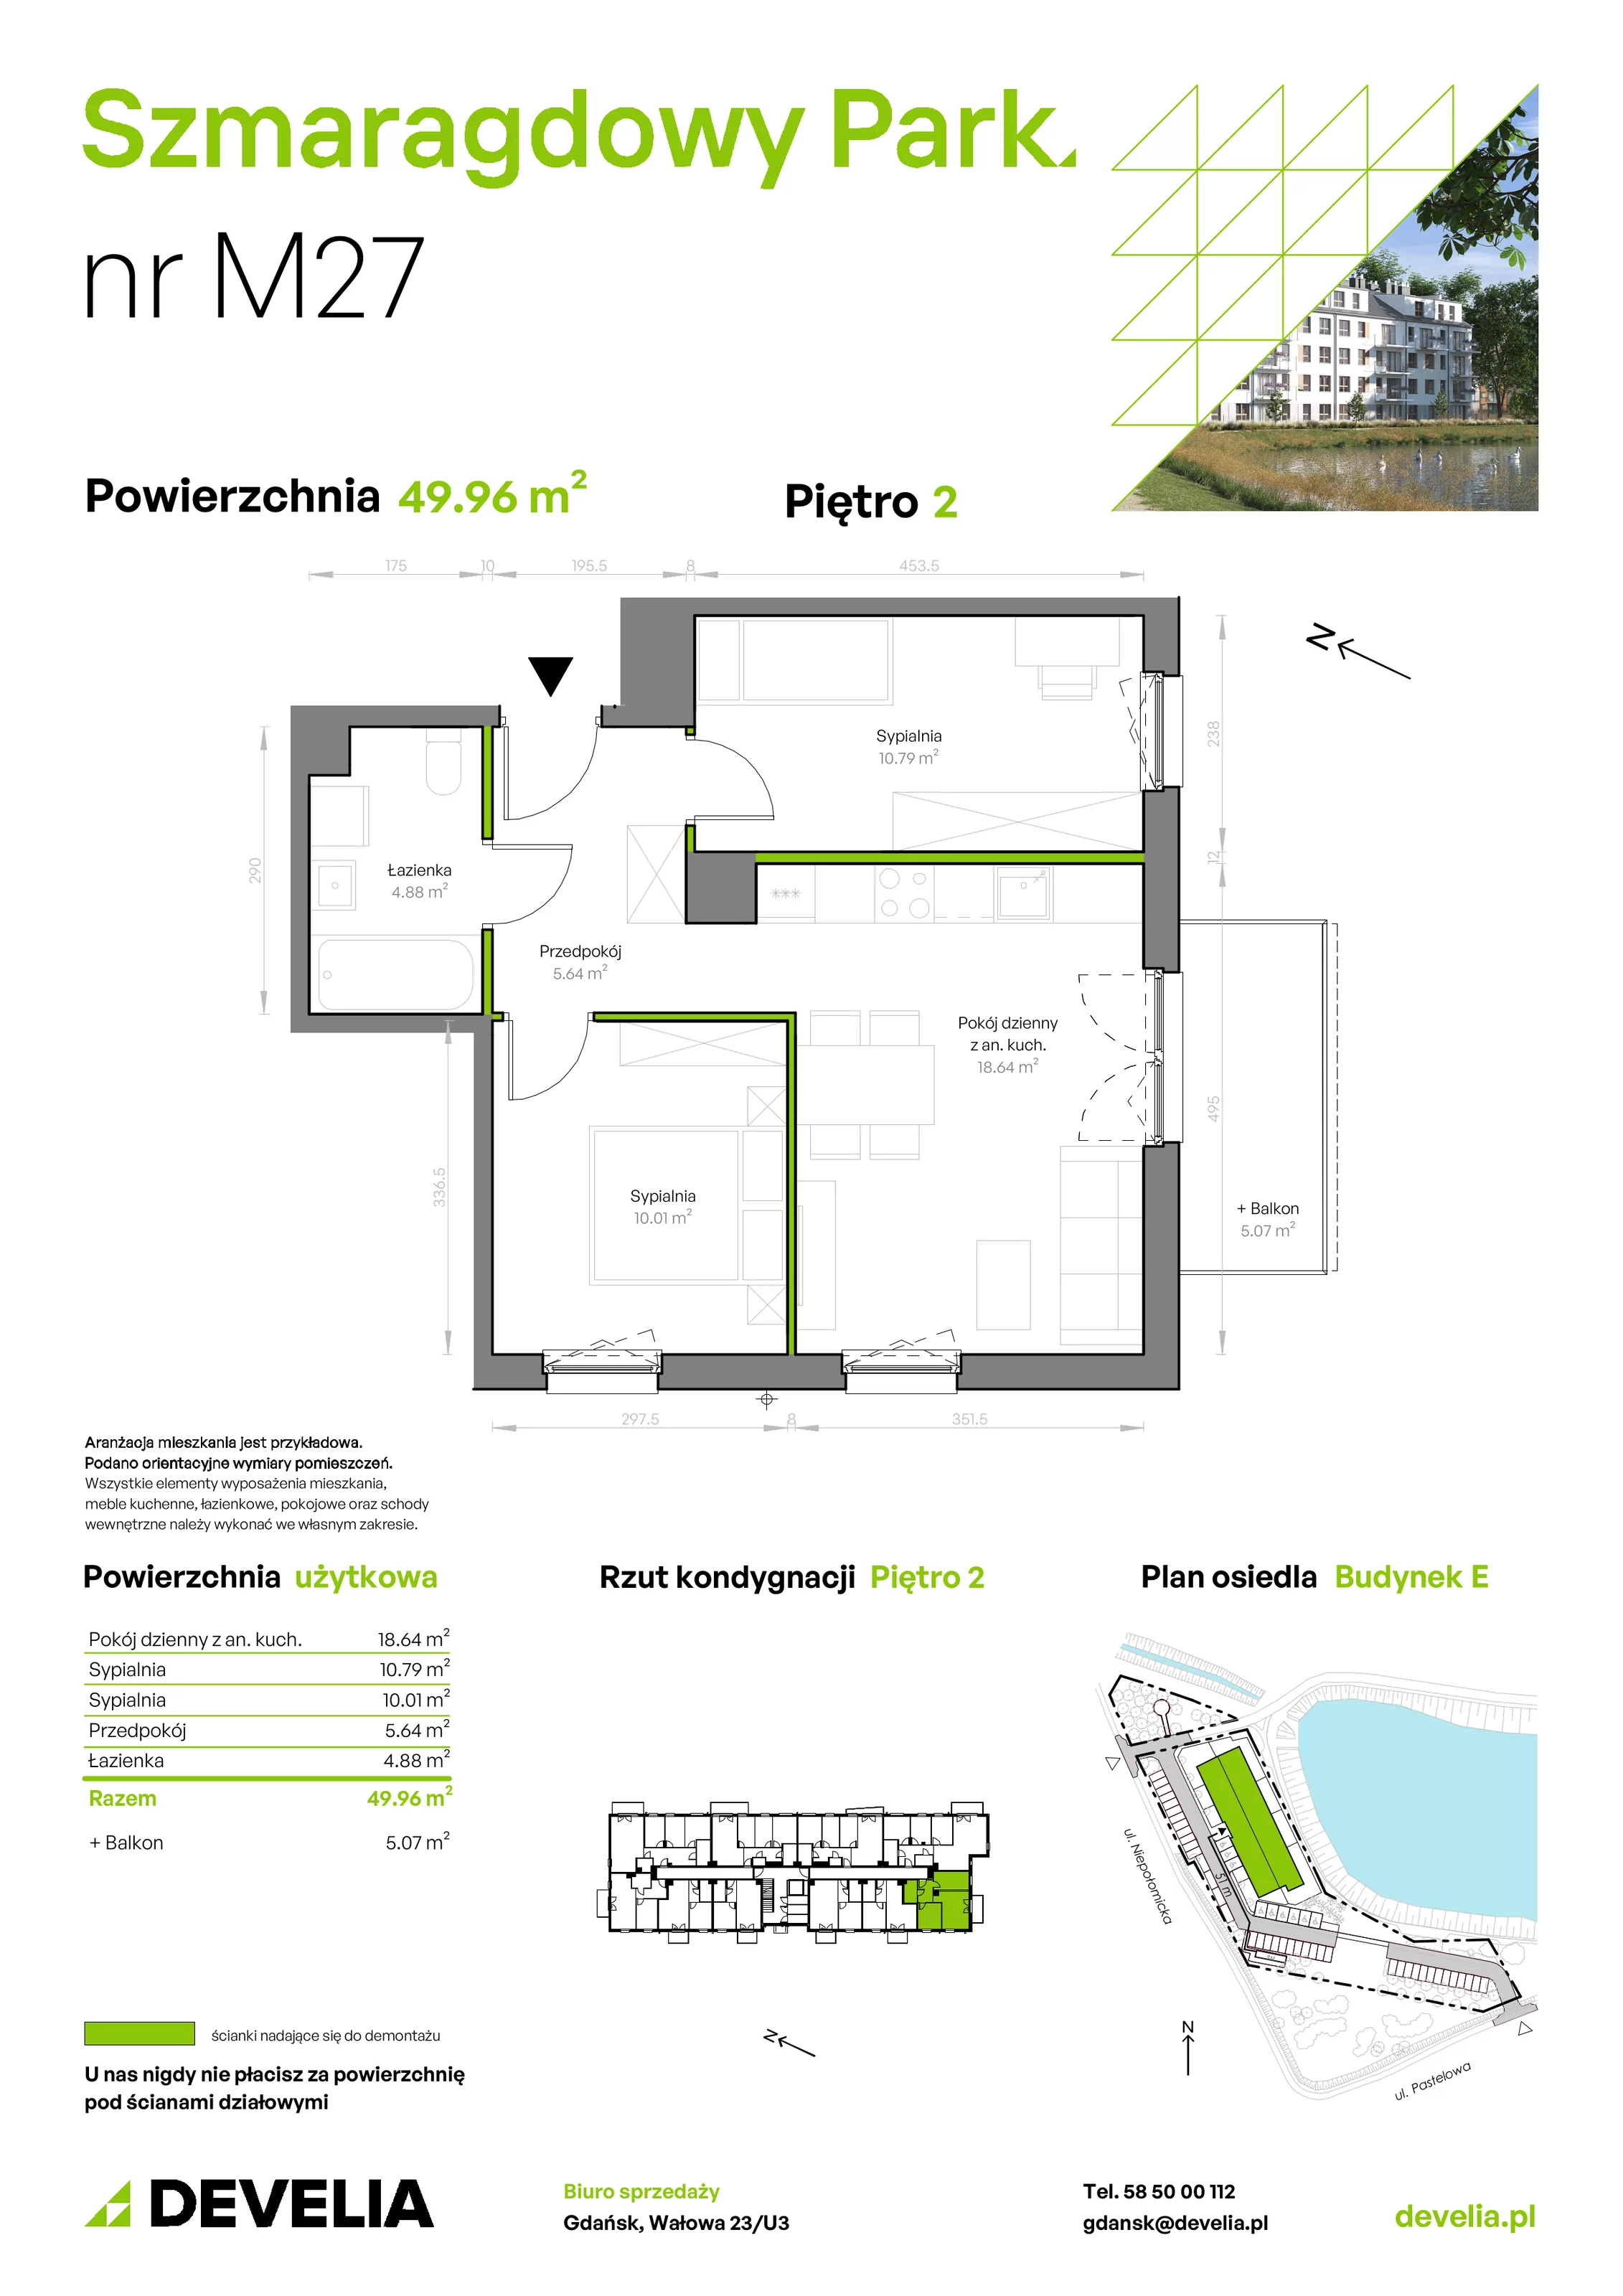 Mieszkanie 49,96 m², piętro 2, oferta nr E/027, Szmaragdowy Park, Gdańsk, Orunia Górna-Gdańsk Południe, Łostowice, ul. Topazowa 2